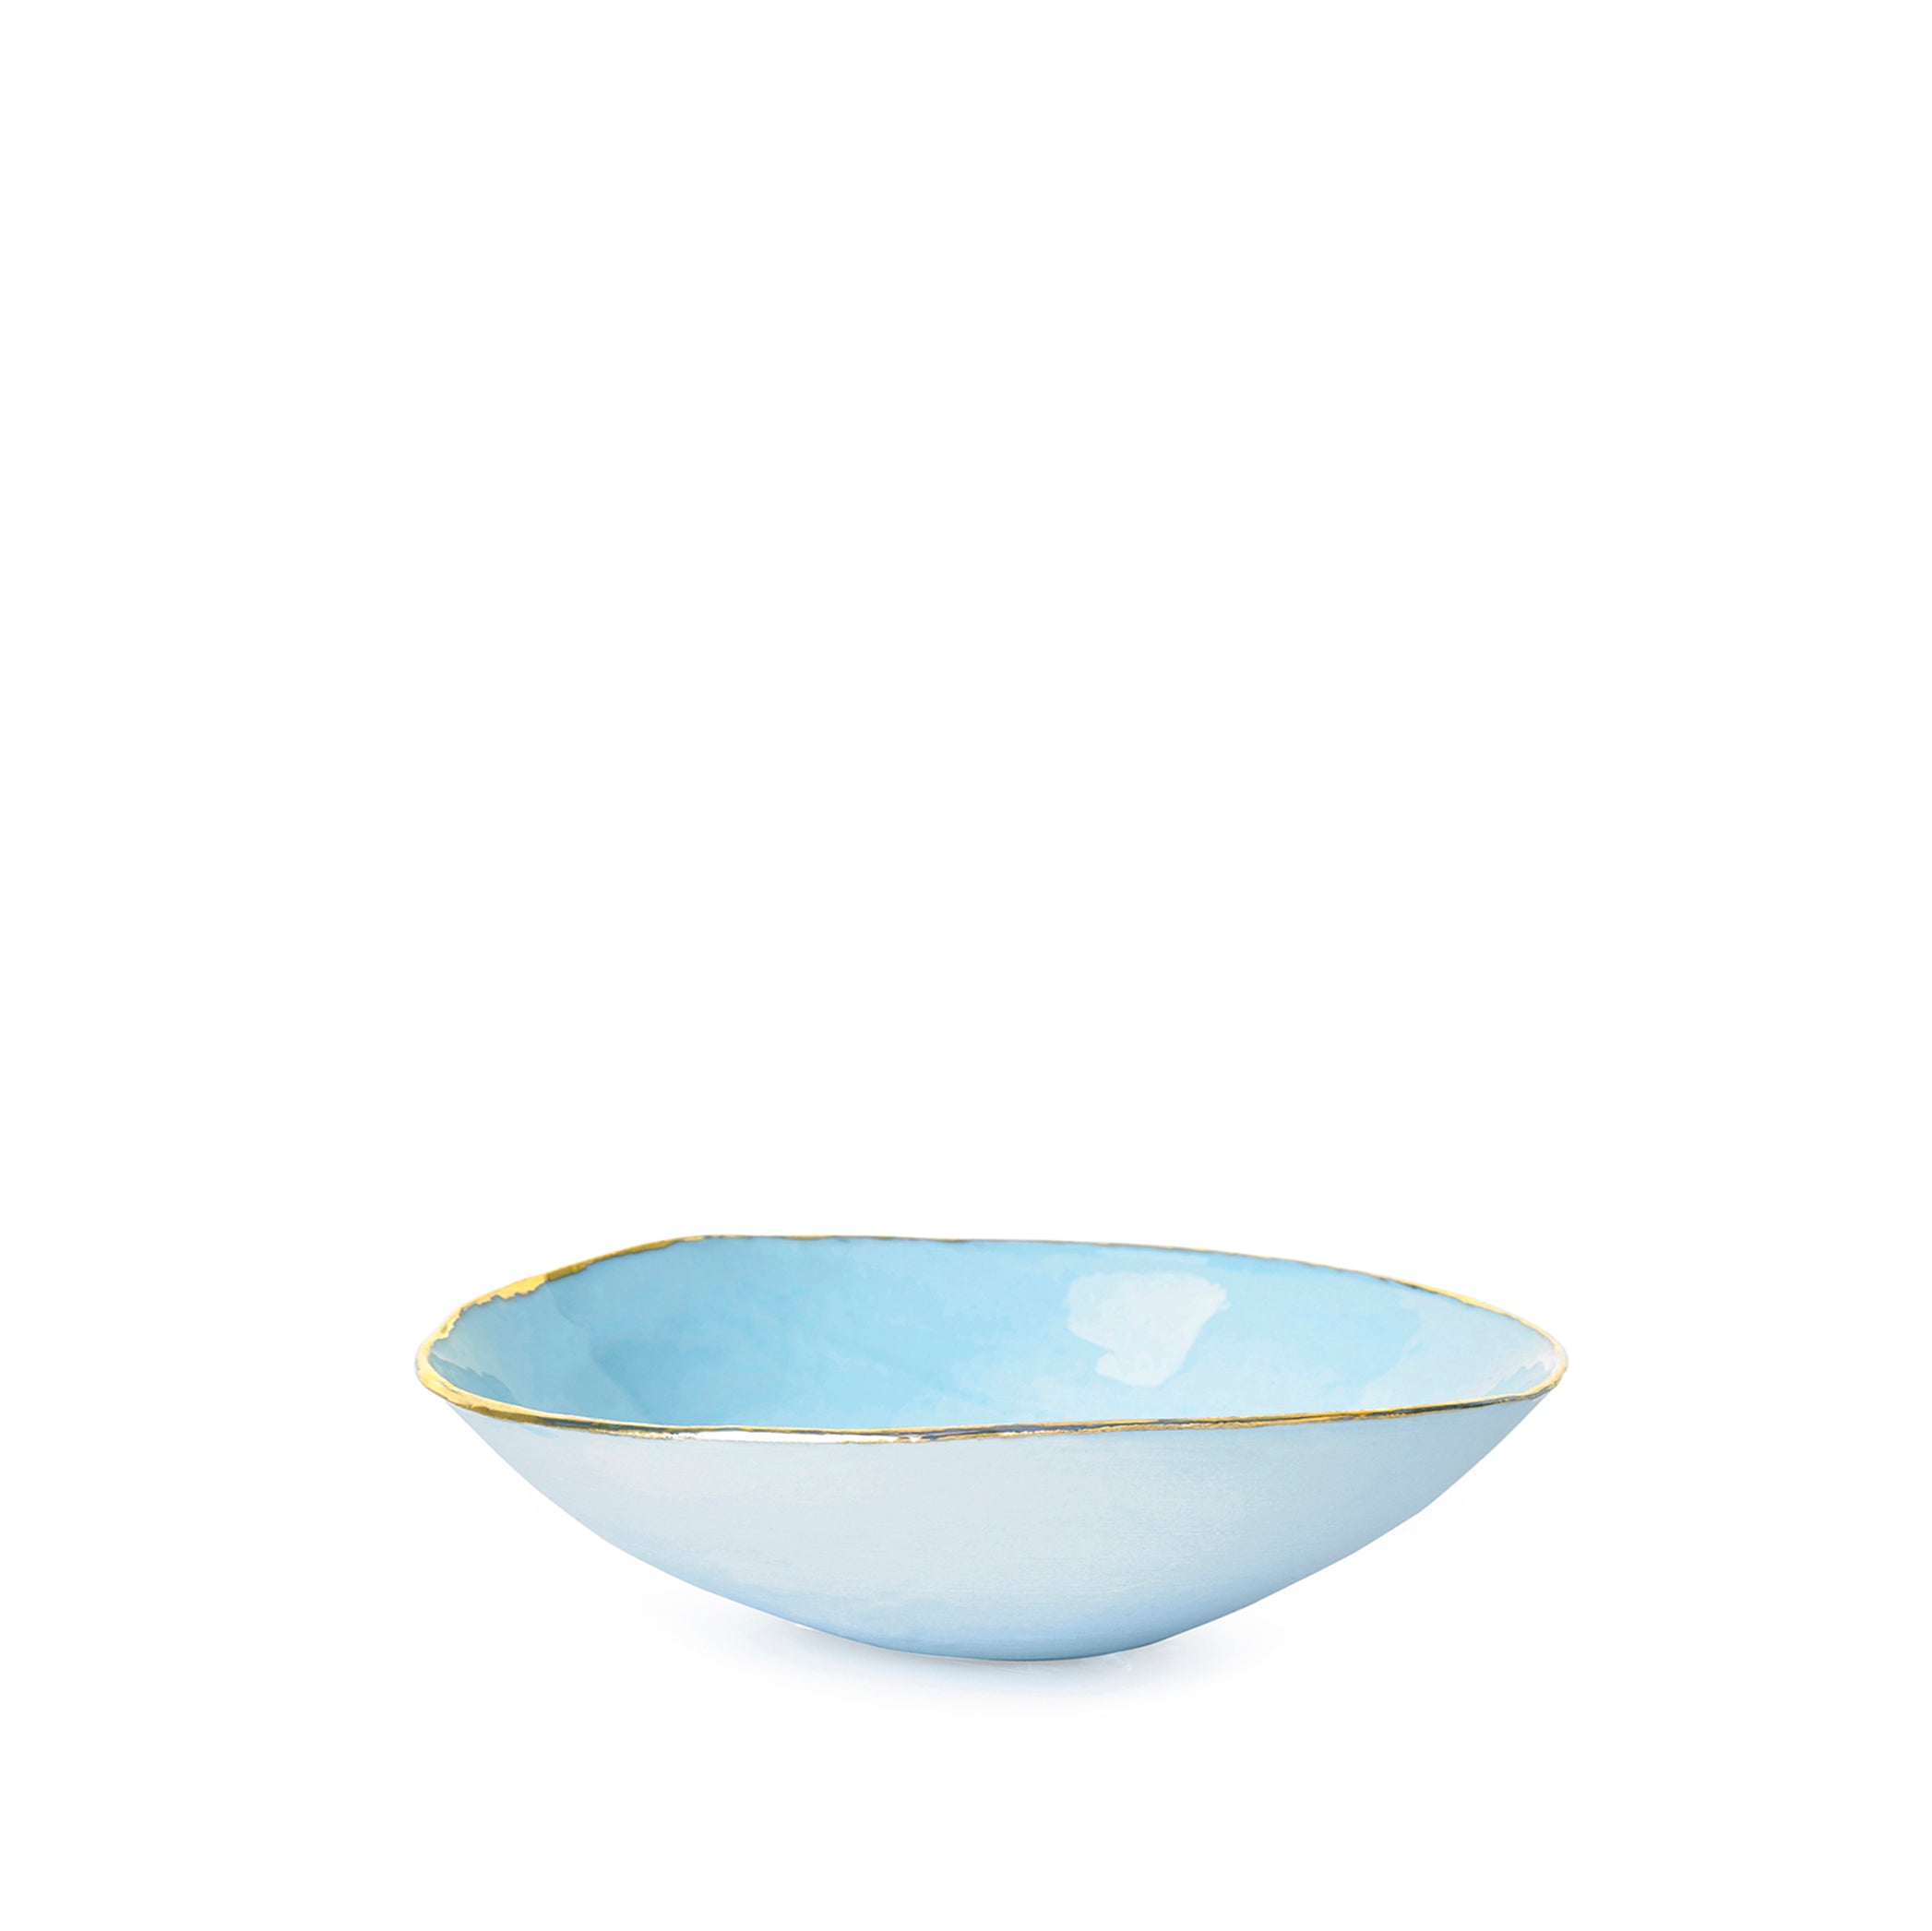 Light Blue Ceramic Bowl with Gold Rim, 16cm